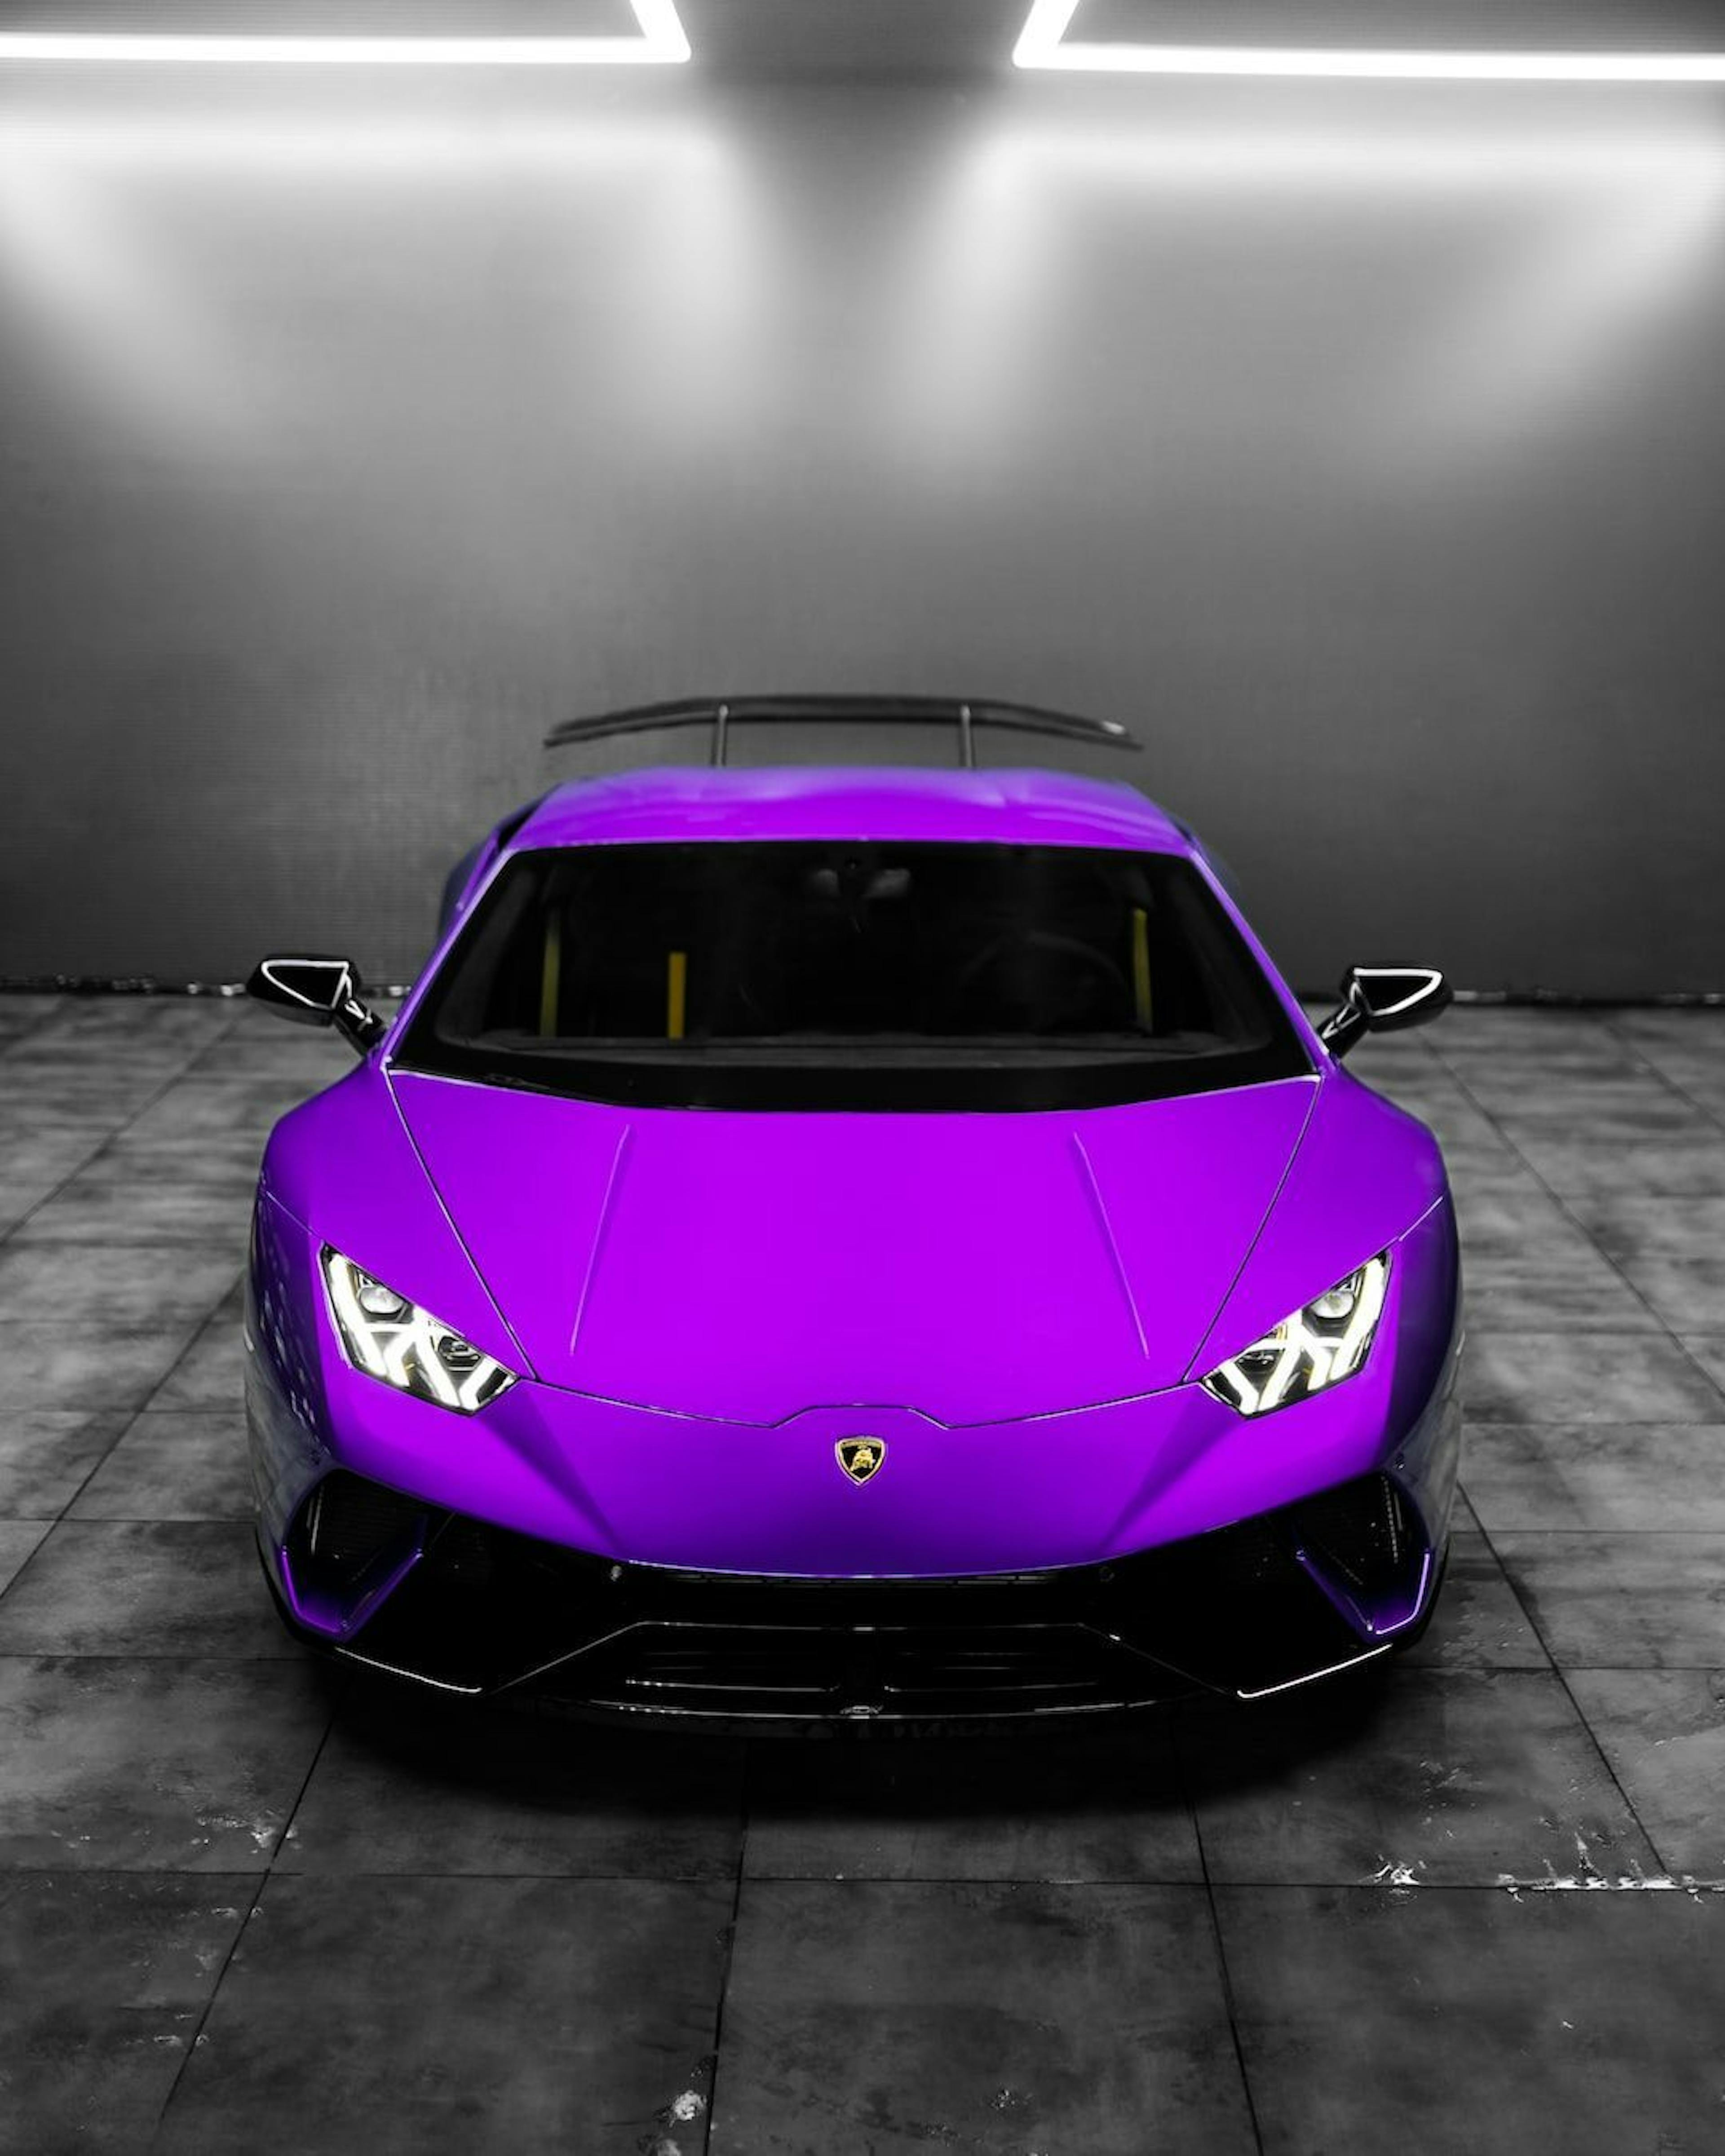 featured image - $PEPE, ein lila Lamborghini und mehr: Die Geschichte geht weiter